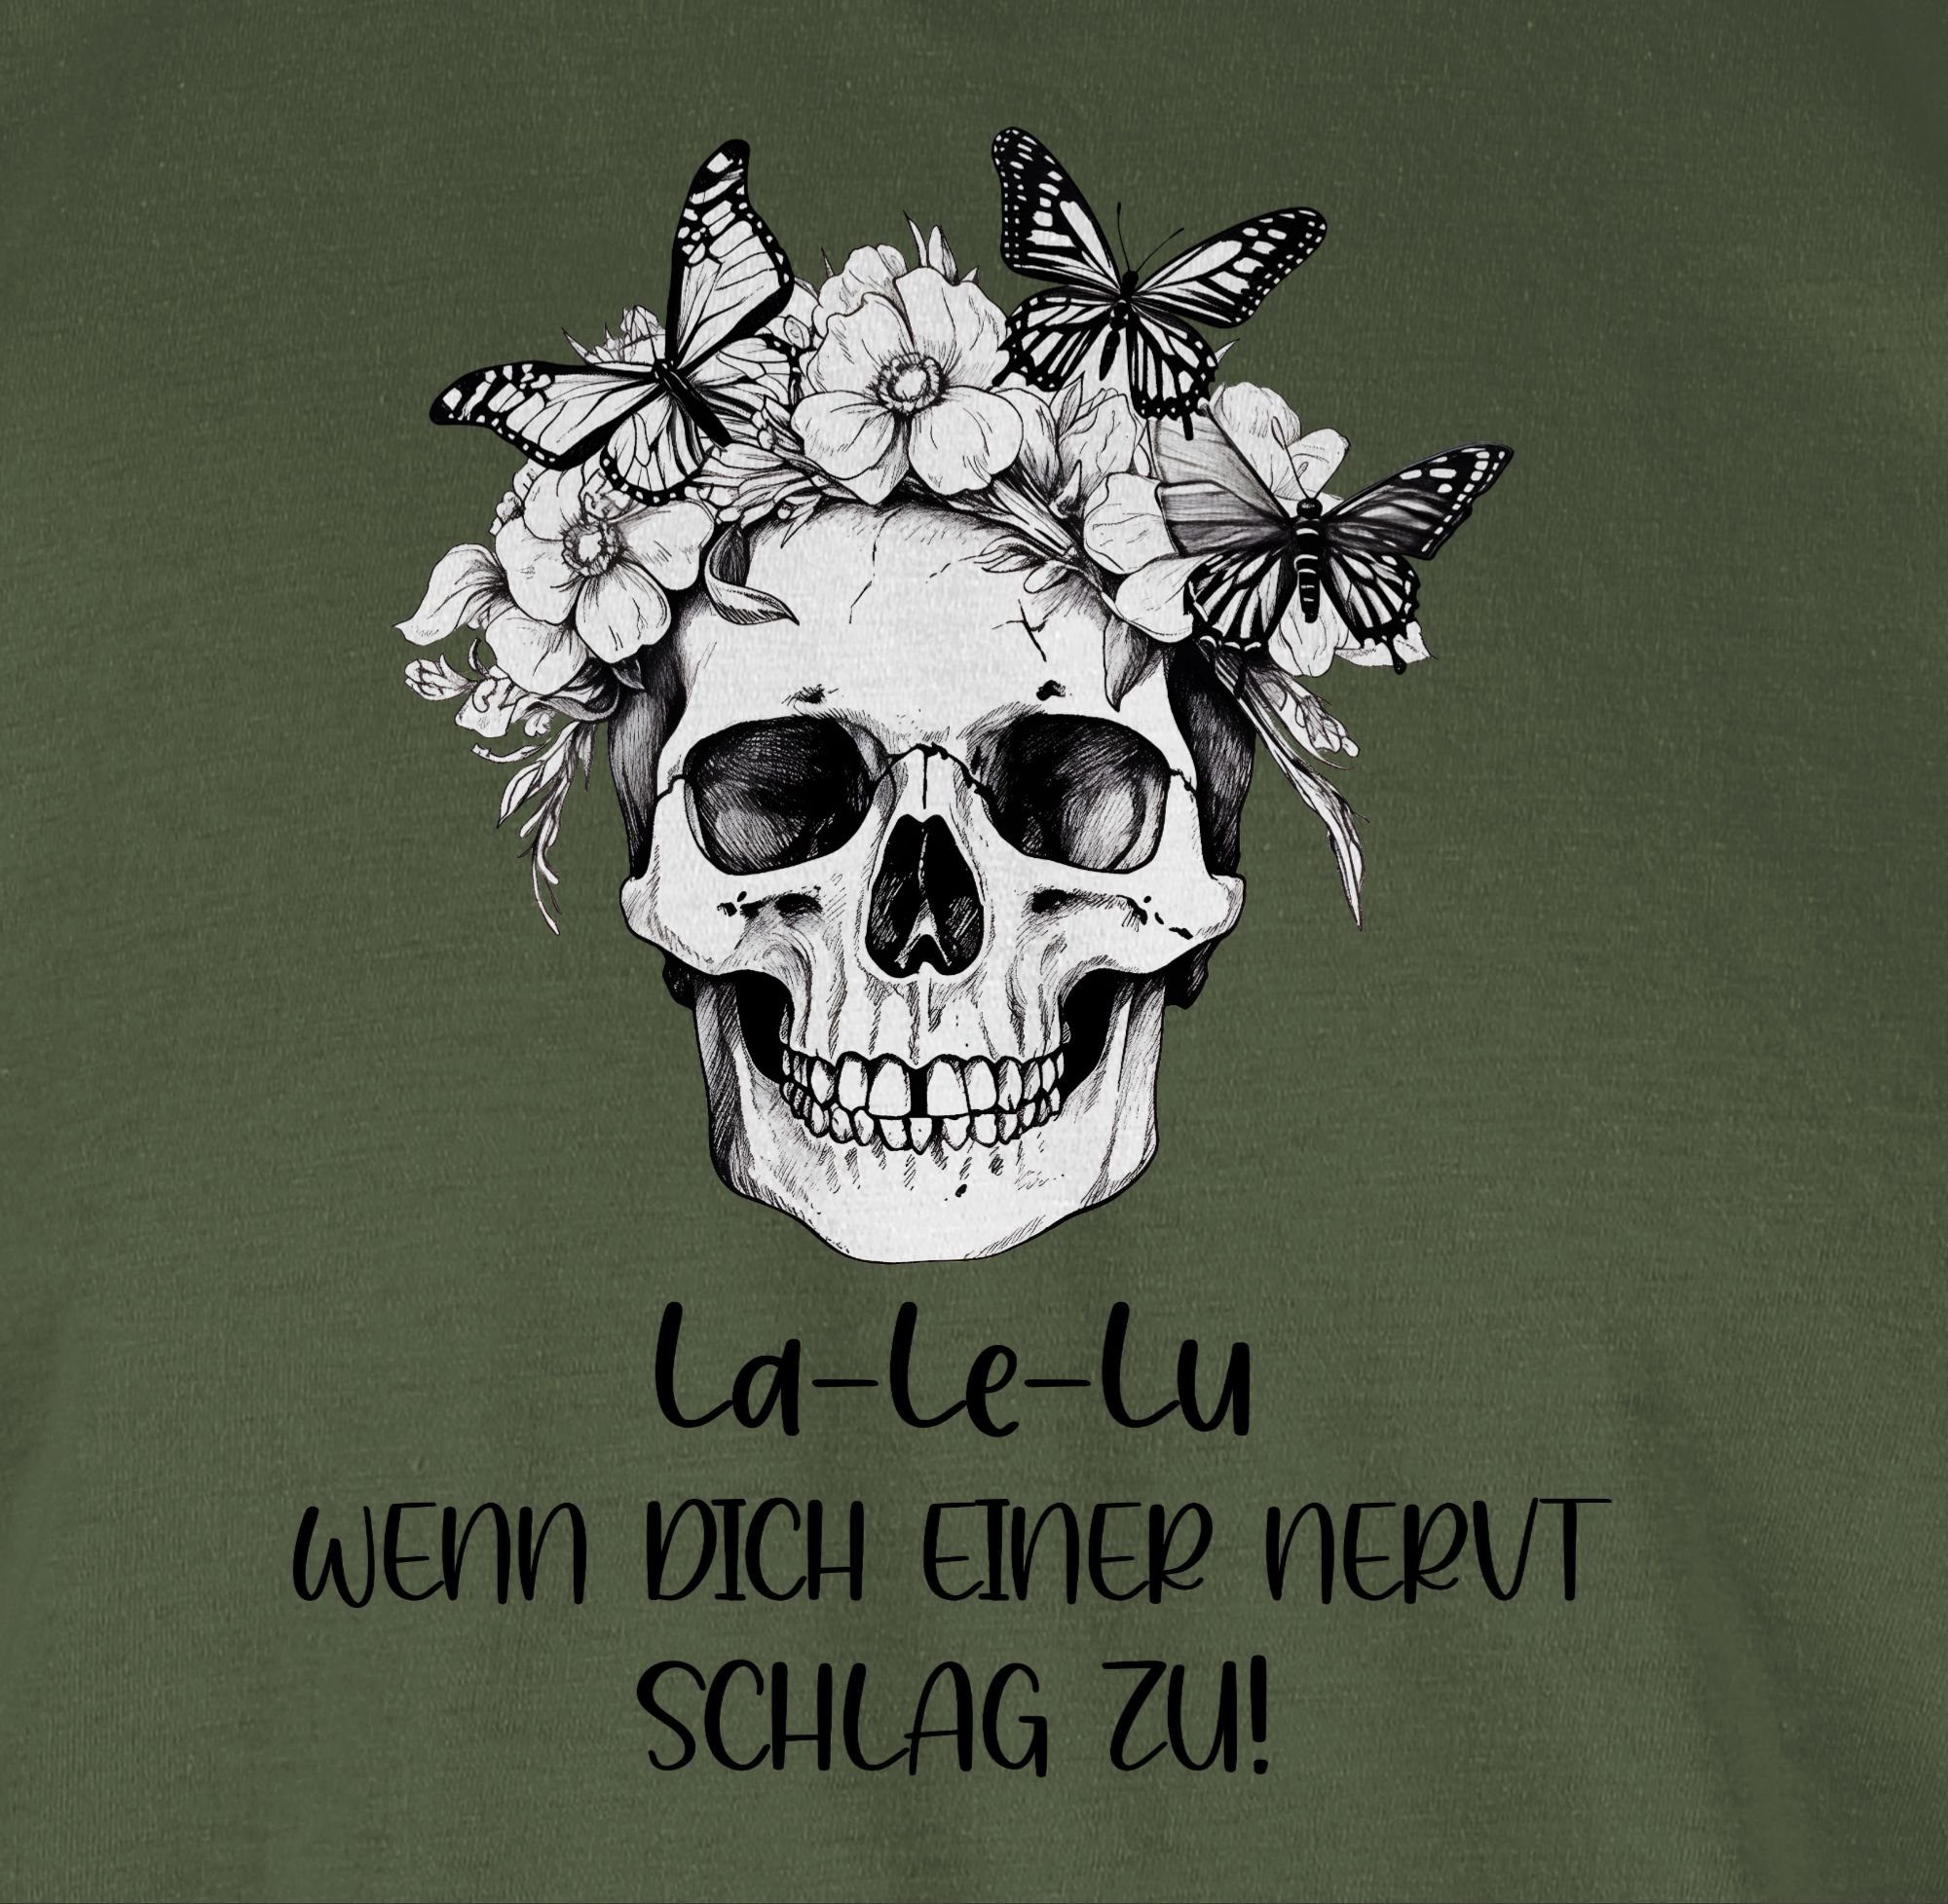 Le dich schlag Army einer Koll Lu La T-Shirt Shirtracer Statement Kollegen nervt wenn zu Skull Totenkopf Grün 01